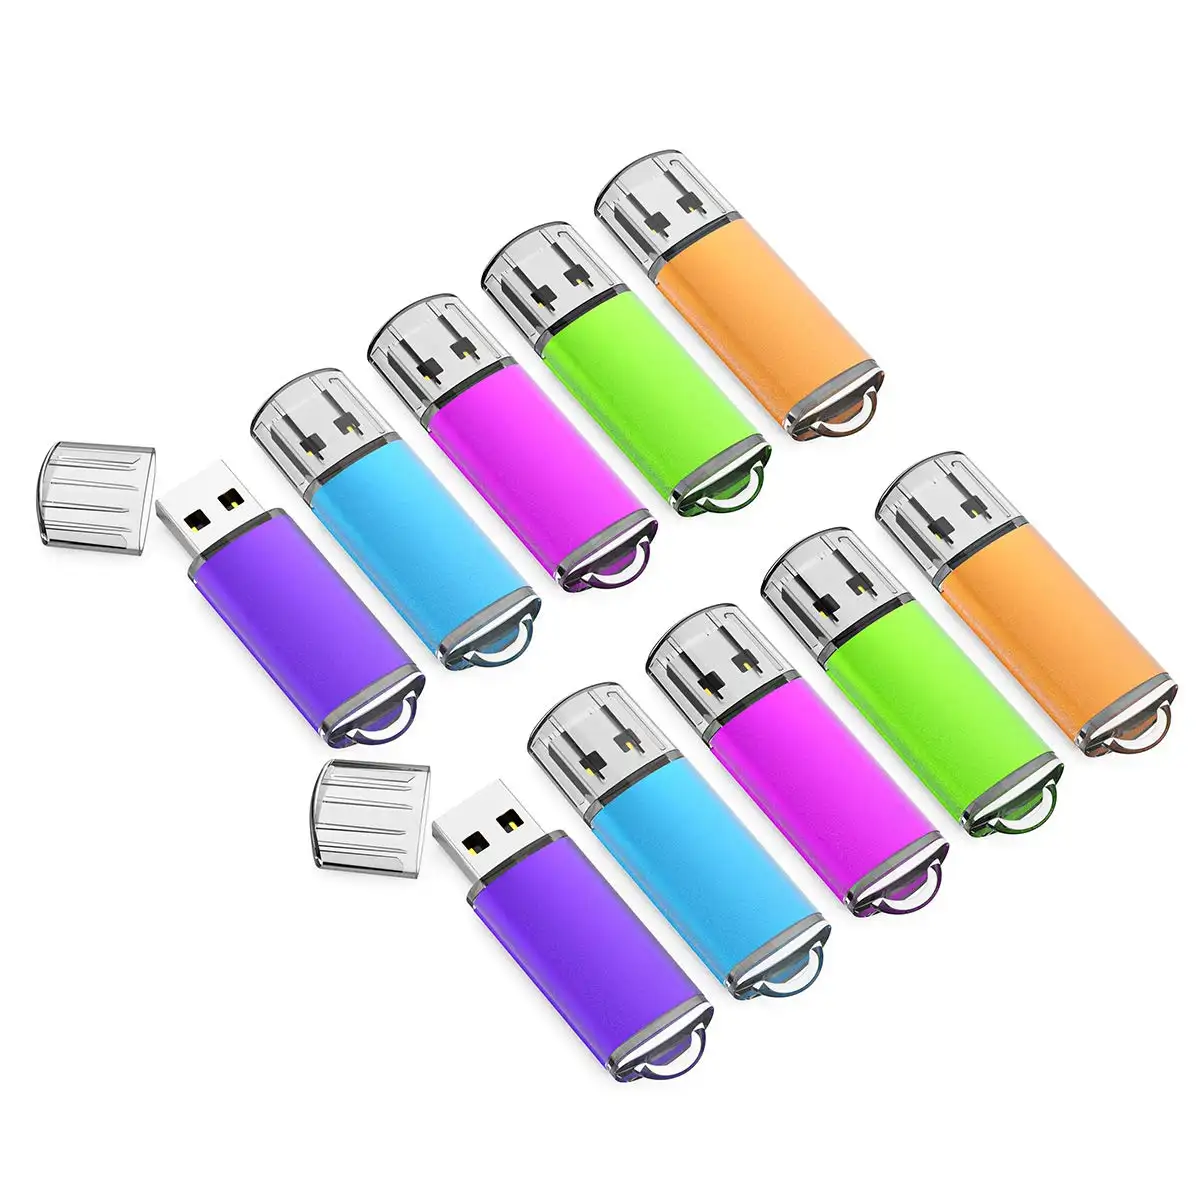 หน่วยความจําการจัดเก็บหน่วยความจําแผ่นดิสก์ Usb 32 GB 64 GB ไดรฟ์นิ้วหัวแม่มือการออกแบบ Pendrive USB Stick USB แฟลชไดรฟ์พร้อมไฟ LED